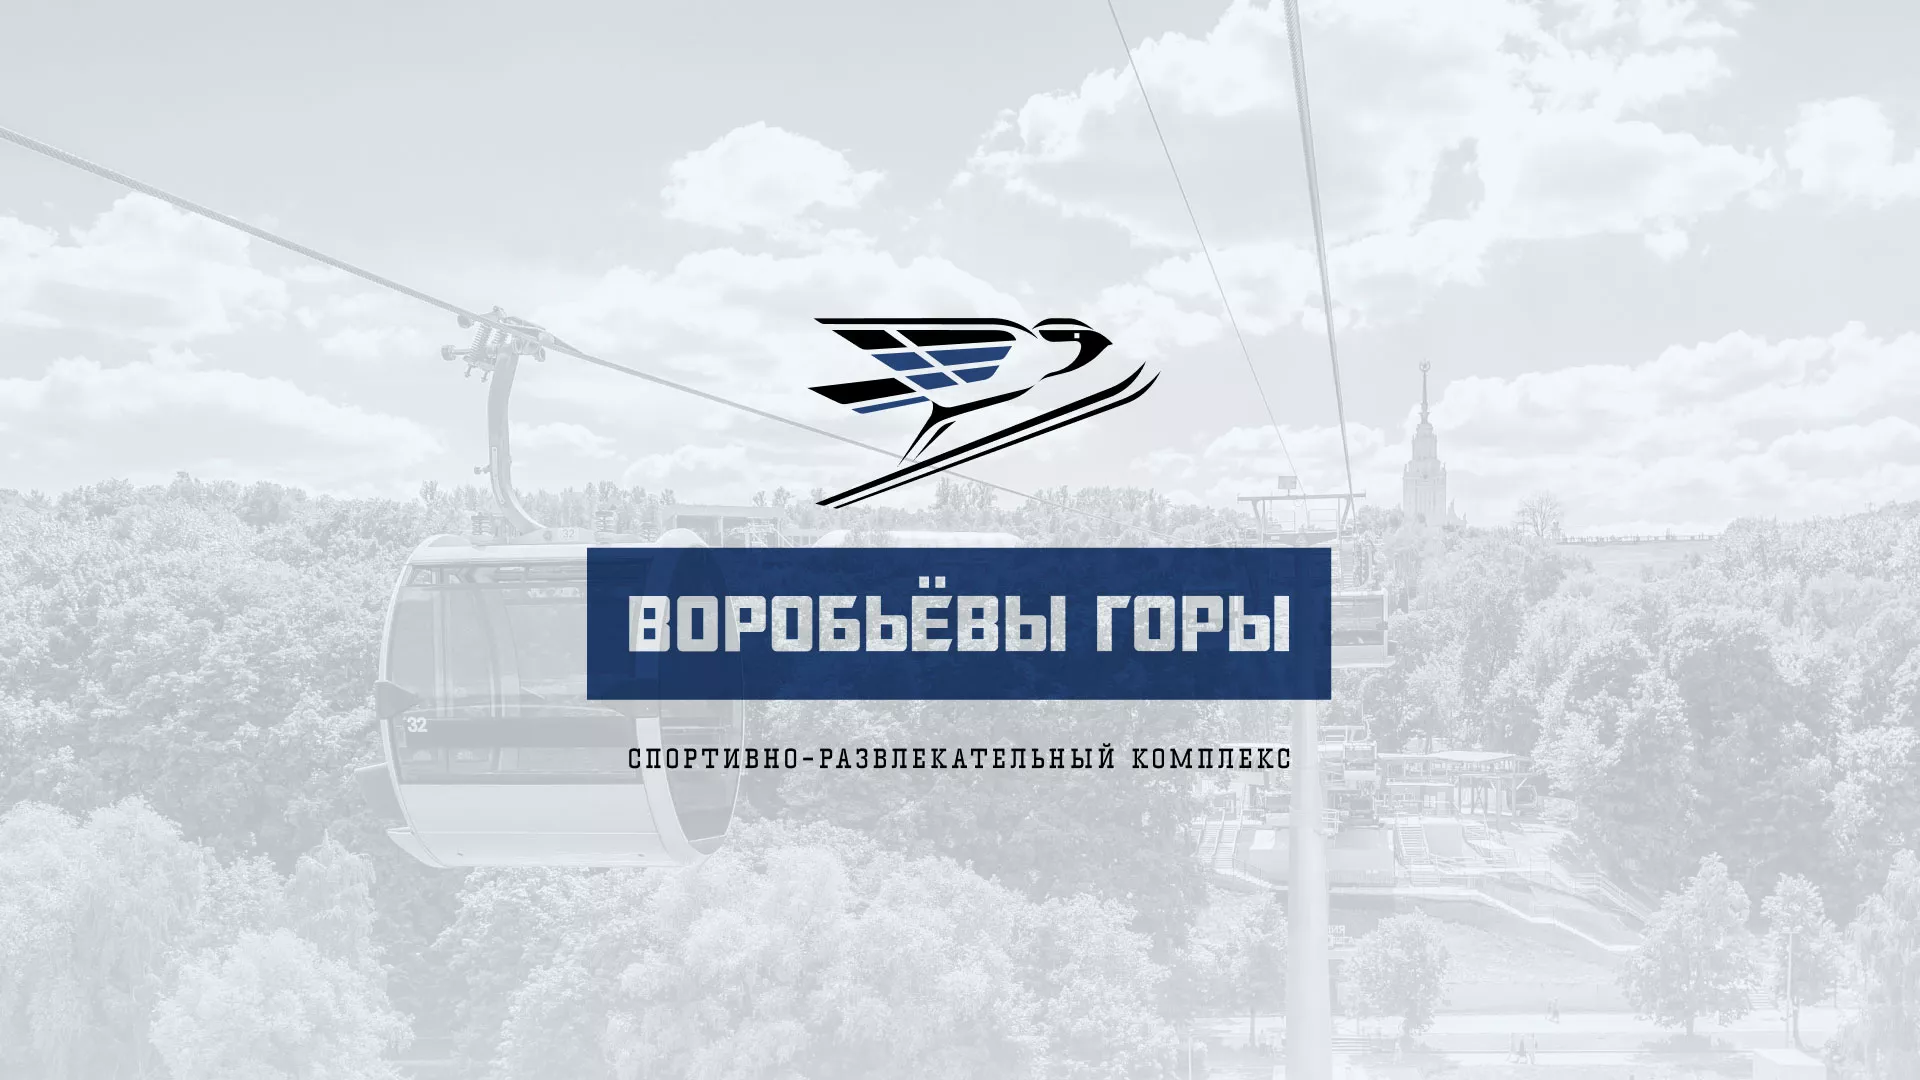 Разработка сайта в Звенигороде для спортивно-развлекательного комплекса «Воробьёвы горы»